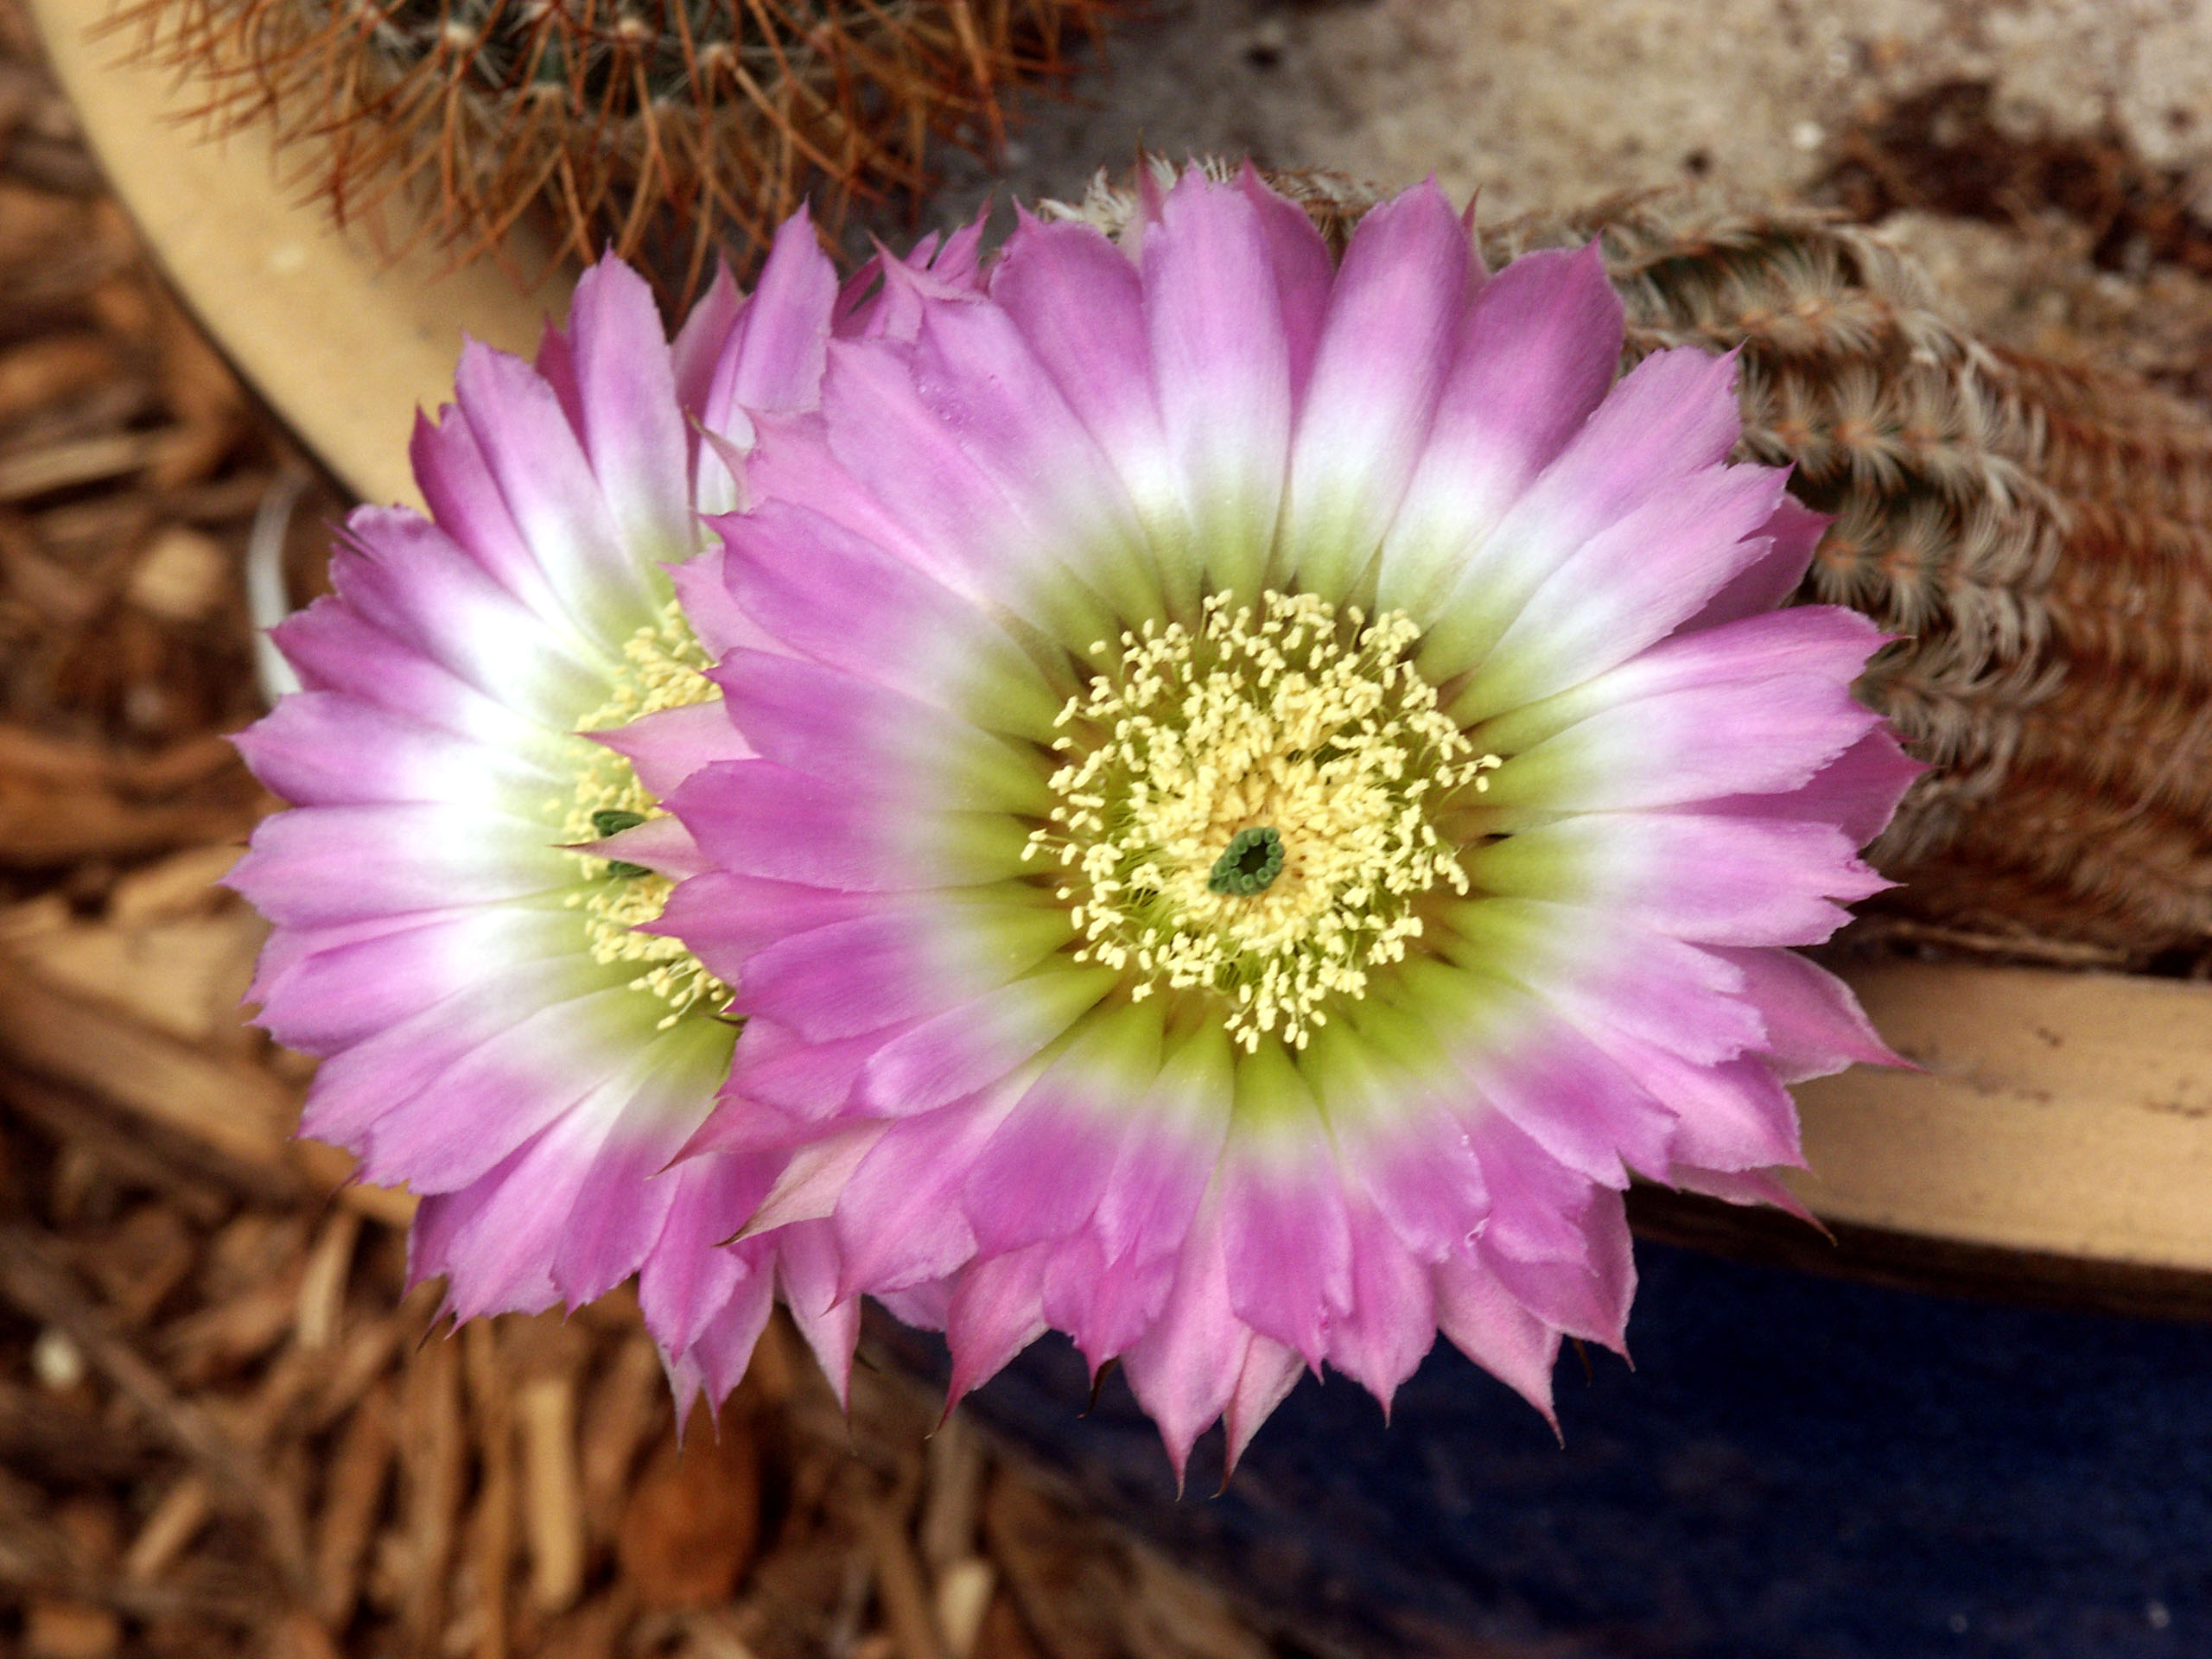 Cactus_flower02